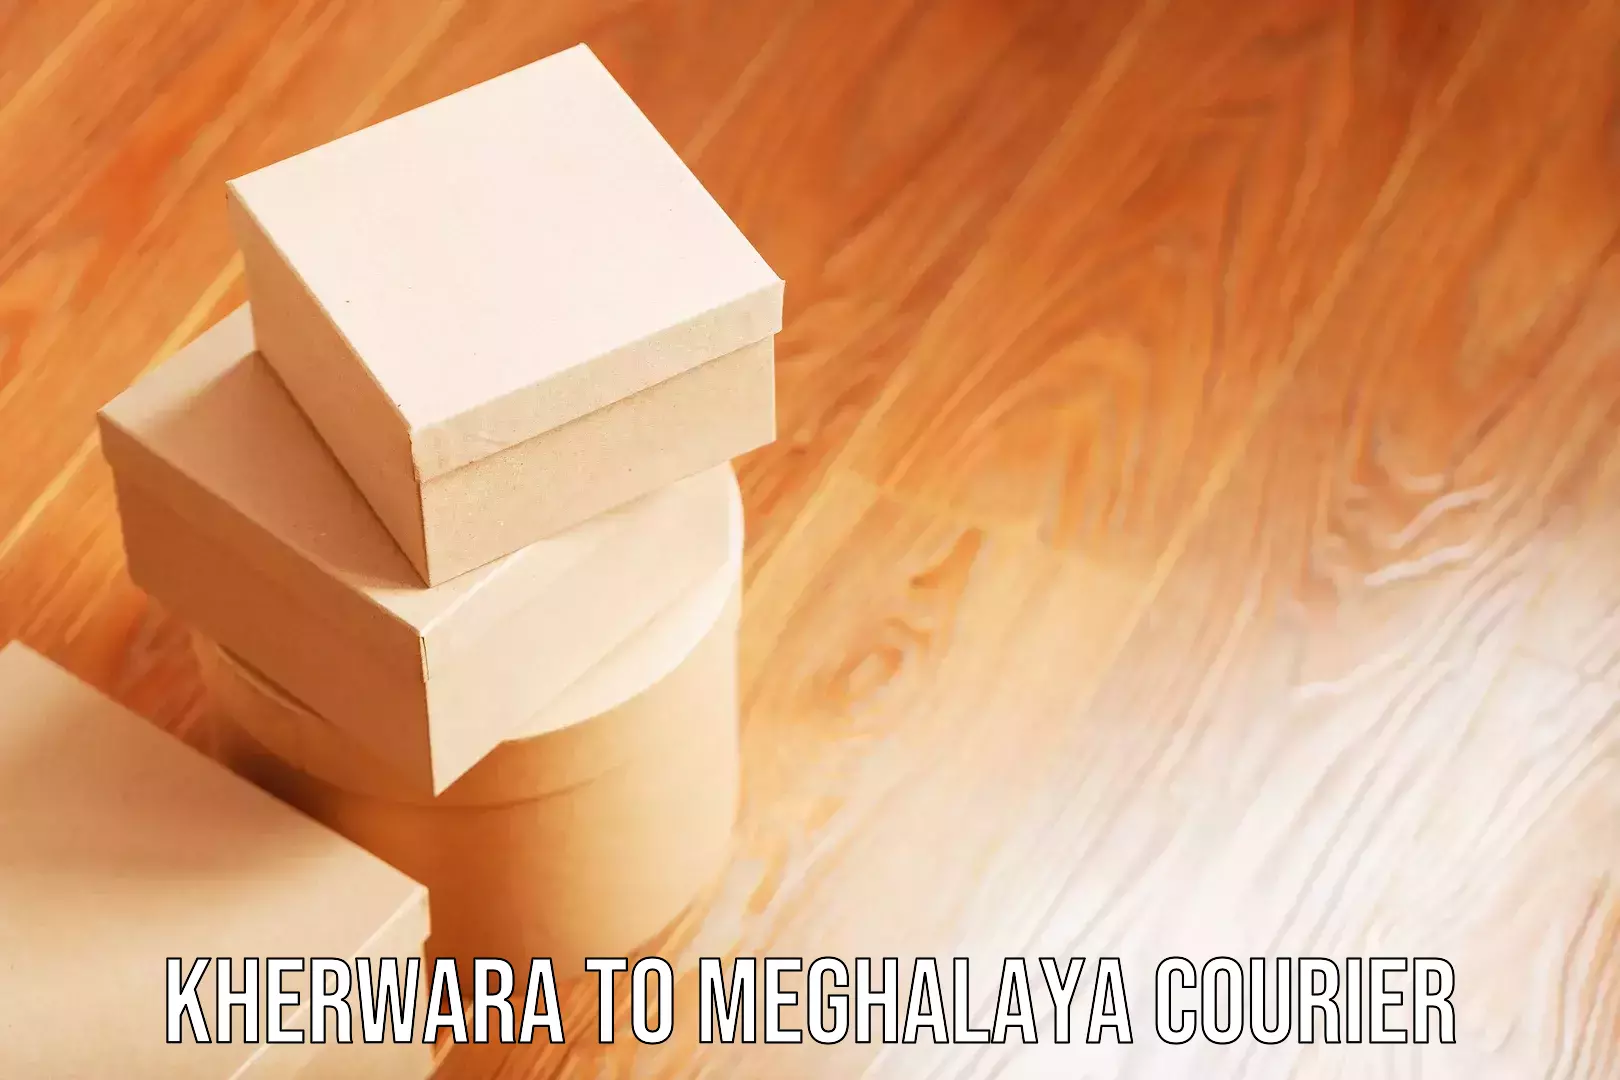 Sports equipment baggage shipping Kherwara to Meghalaya